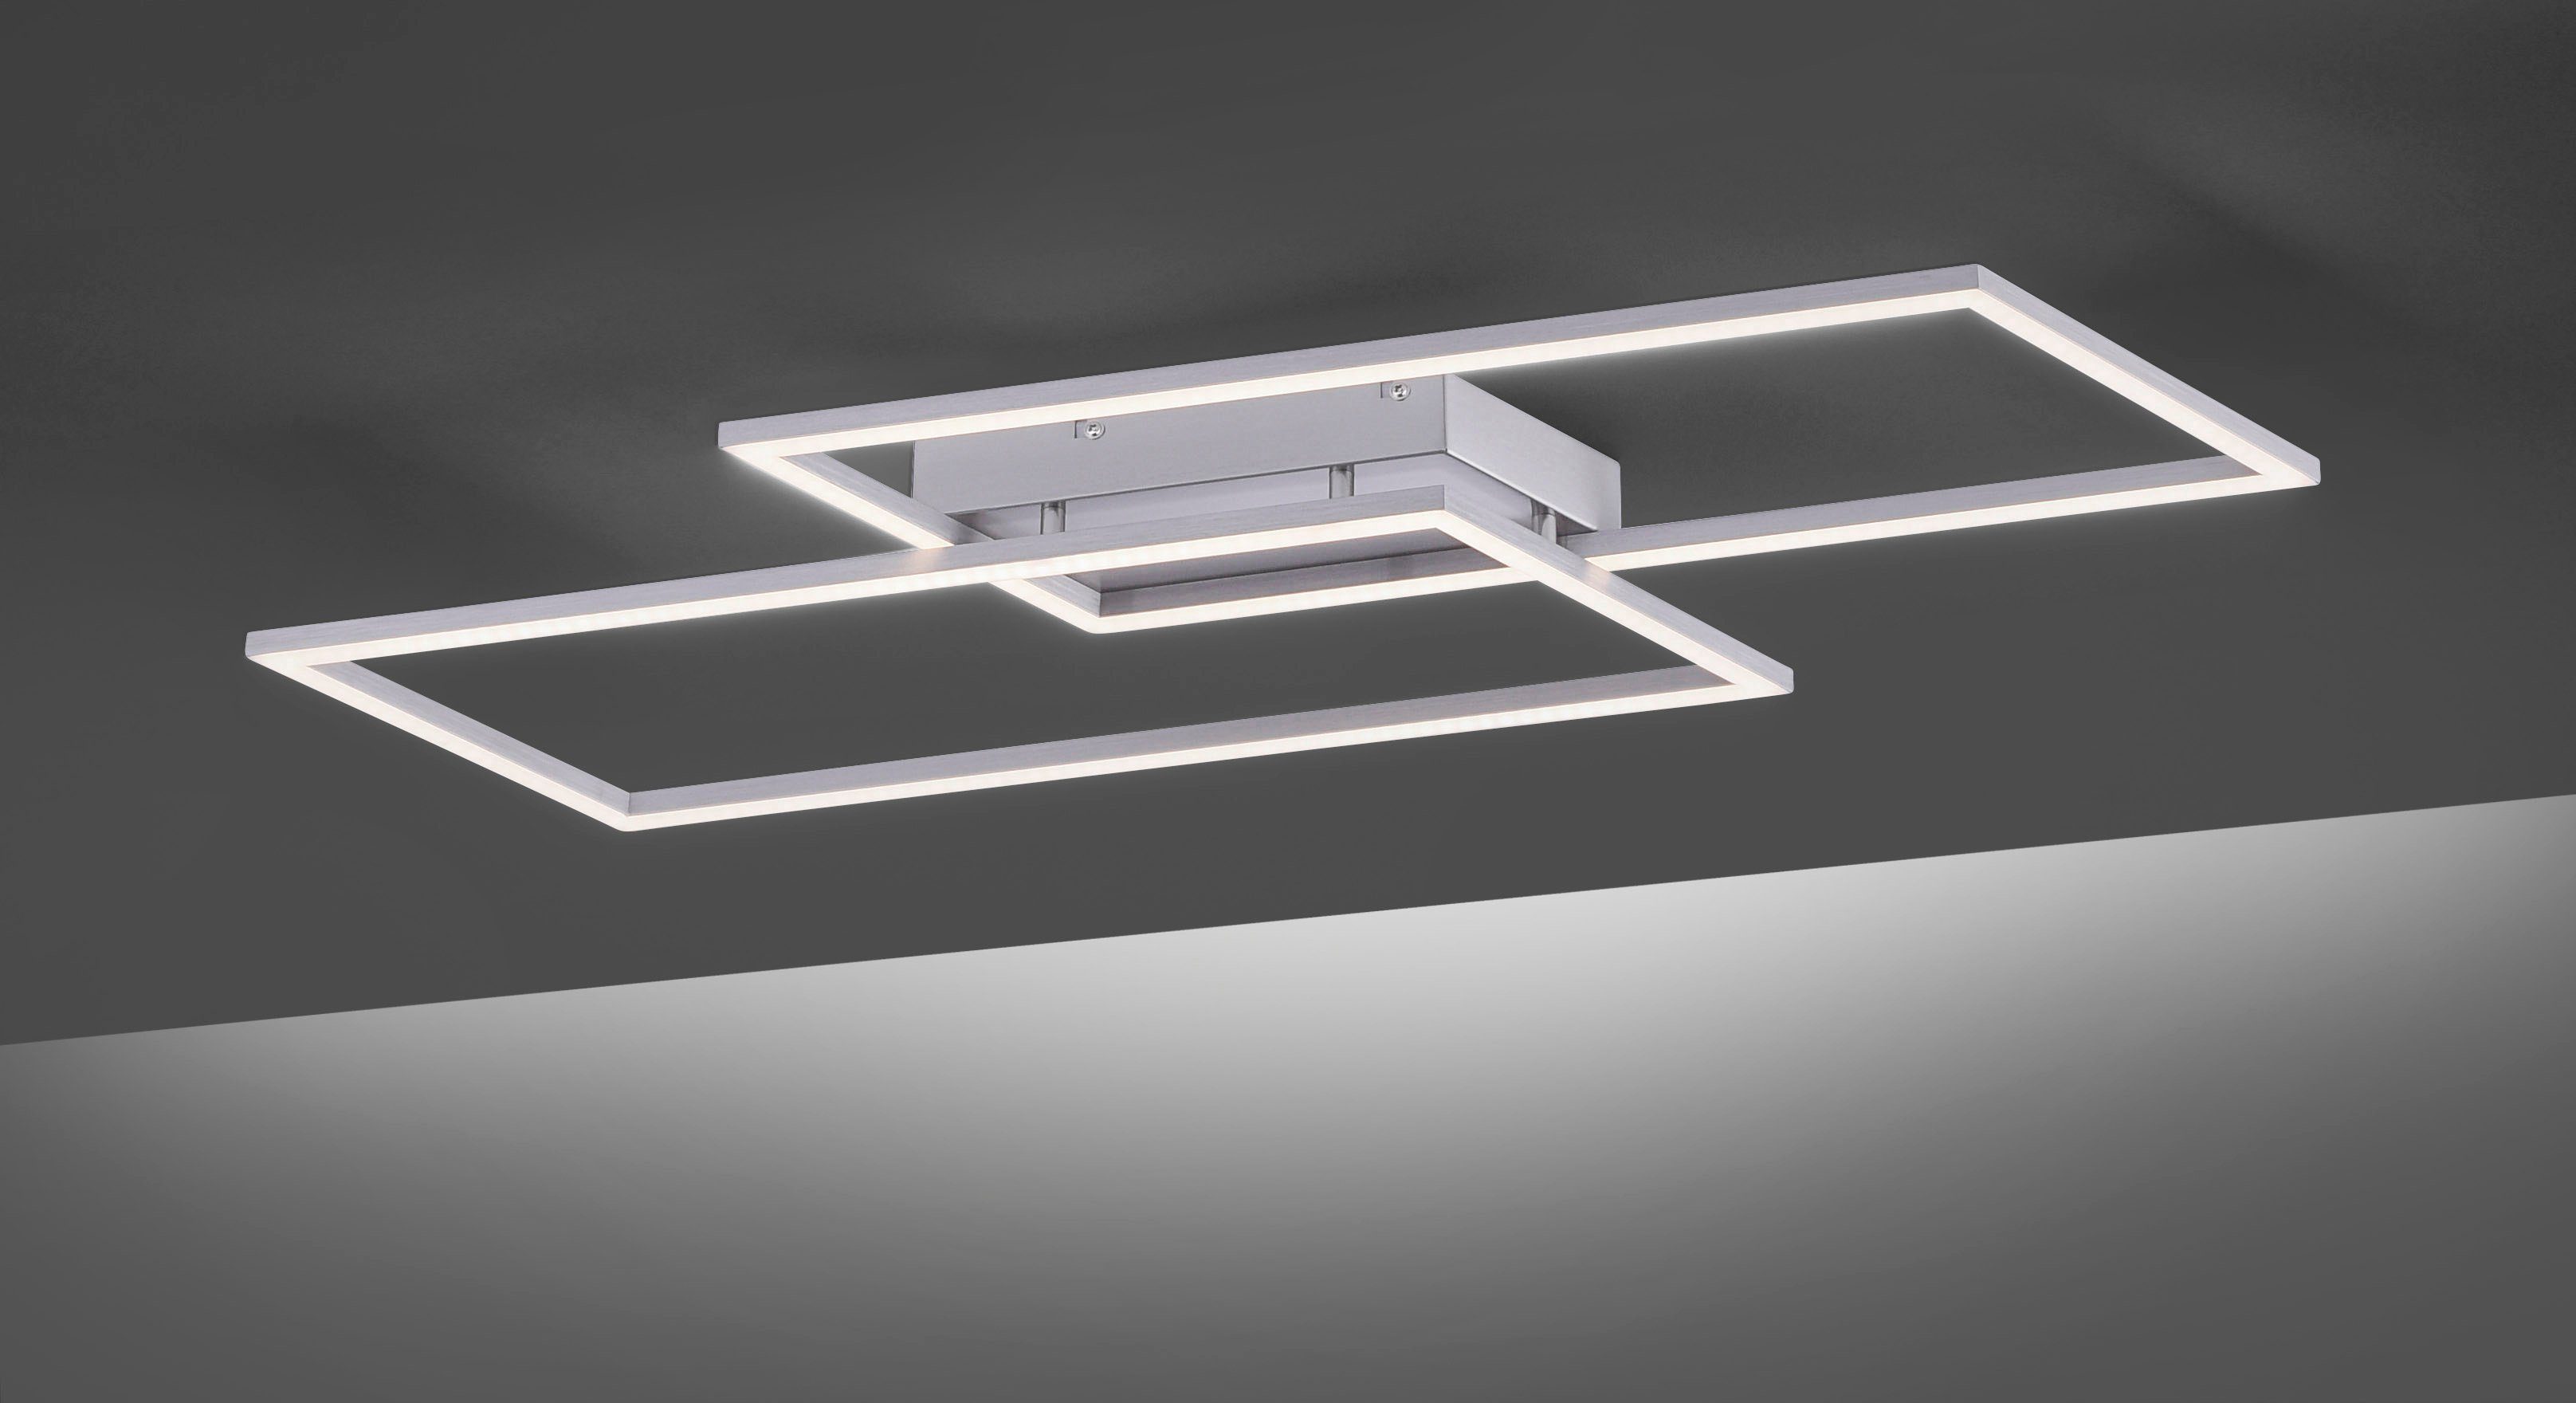 Paul Neuhaus LED Deckenleuchte Inigo, fest Stufenlos integriert, über LED vorhandenen Dimmfunktion, Warmweiß, Wandschalter dimmbar